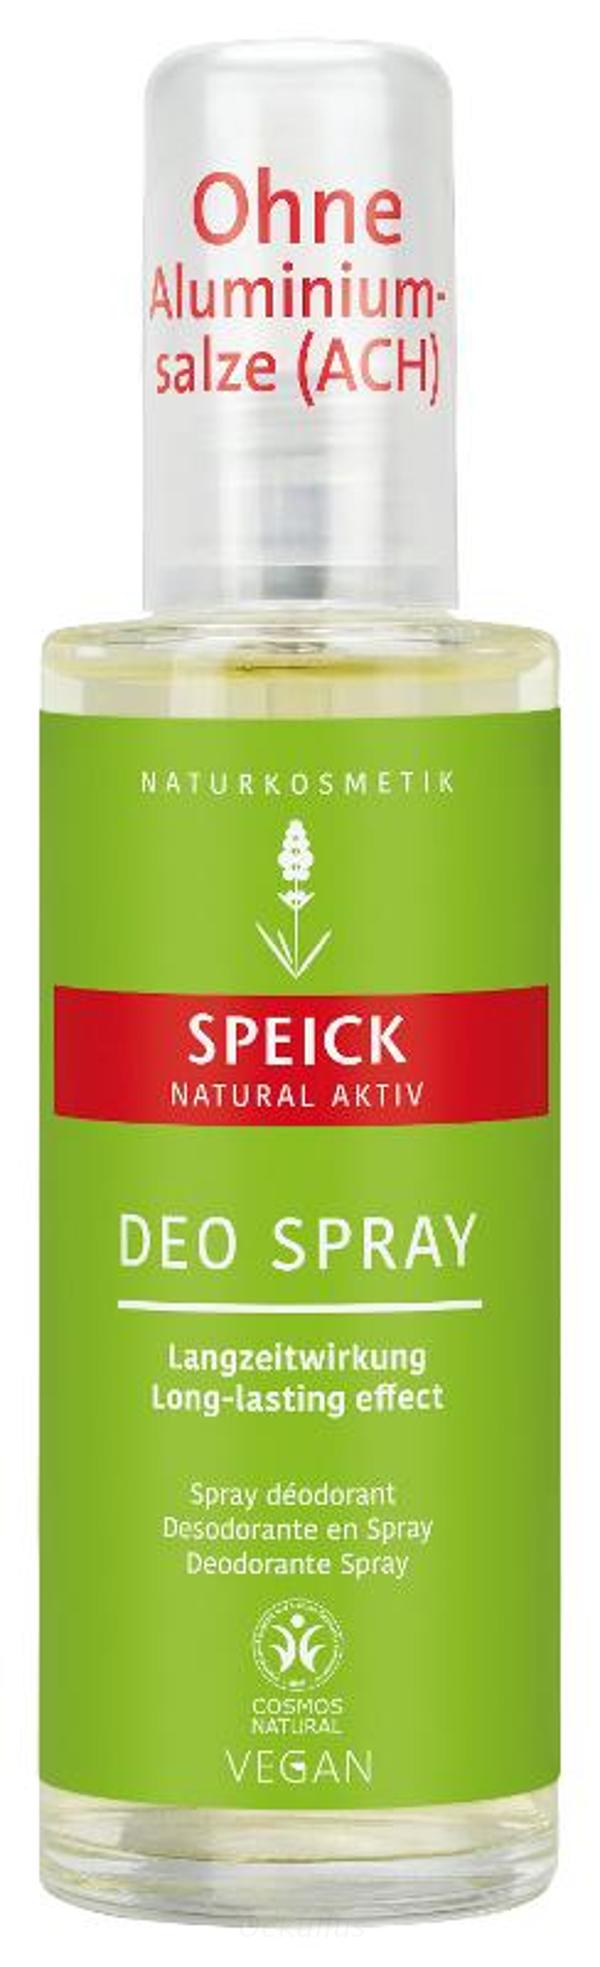 Produktfoto zu Speick Natural Aktiv Deo Spray